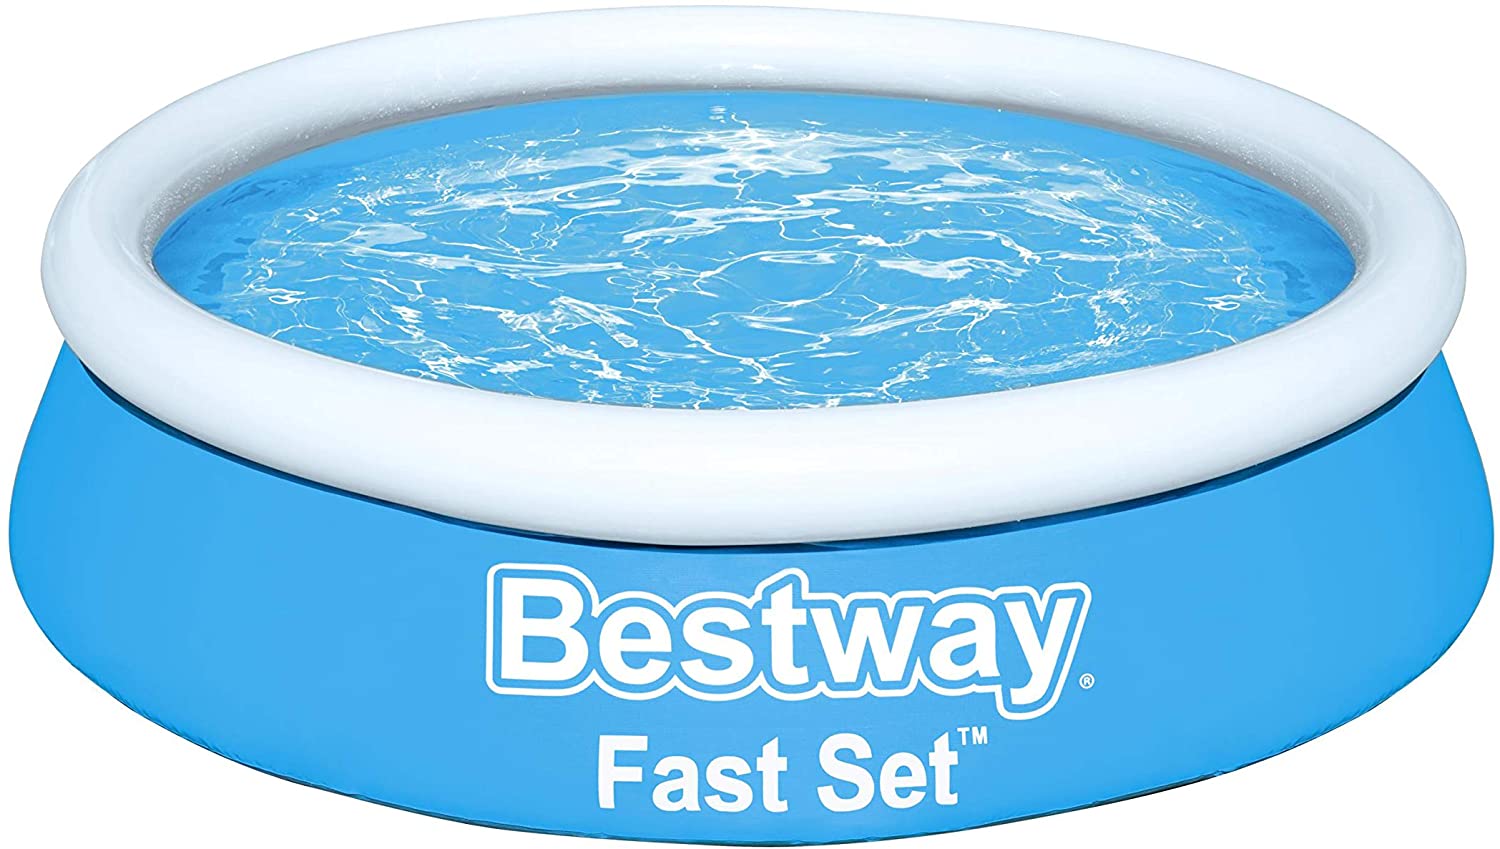 Bestway Fast Set Pool mit Luftring, stellt Sich von selbst Auf 183 x 51 cm 57392, Blu